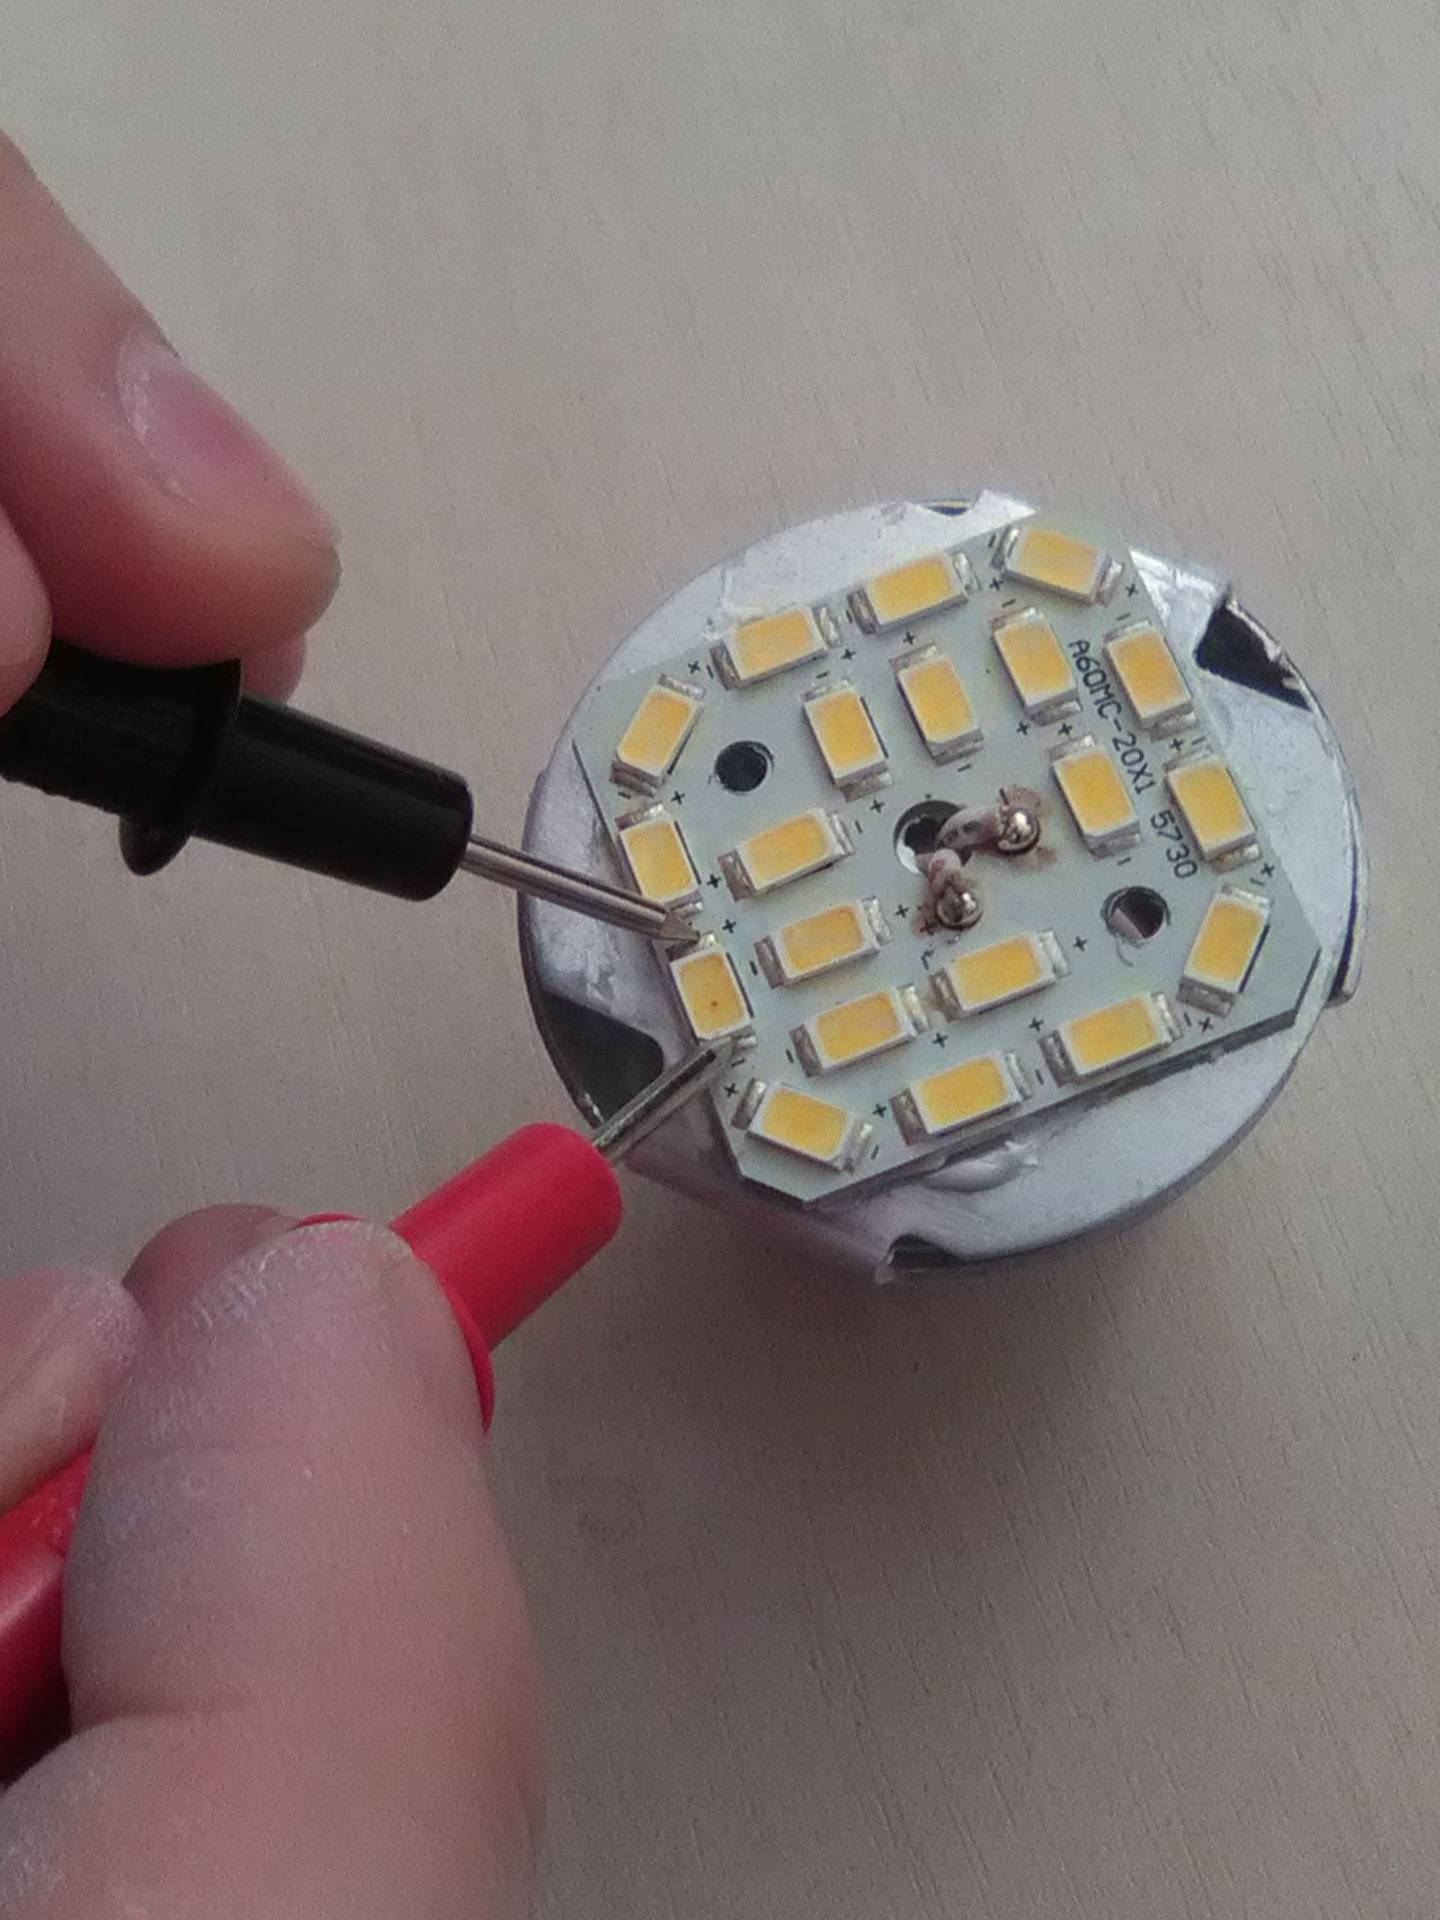 Как самостоятельно отремонтировать led светильник